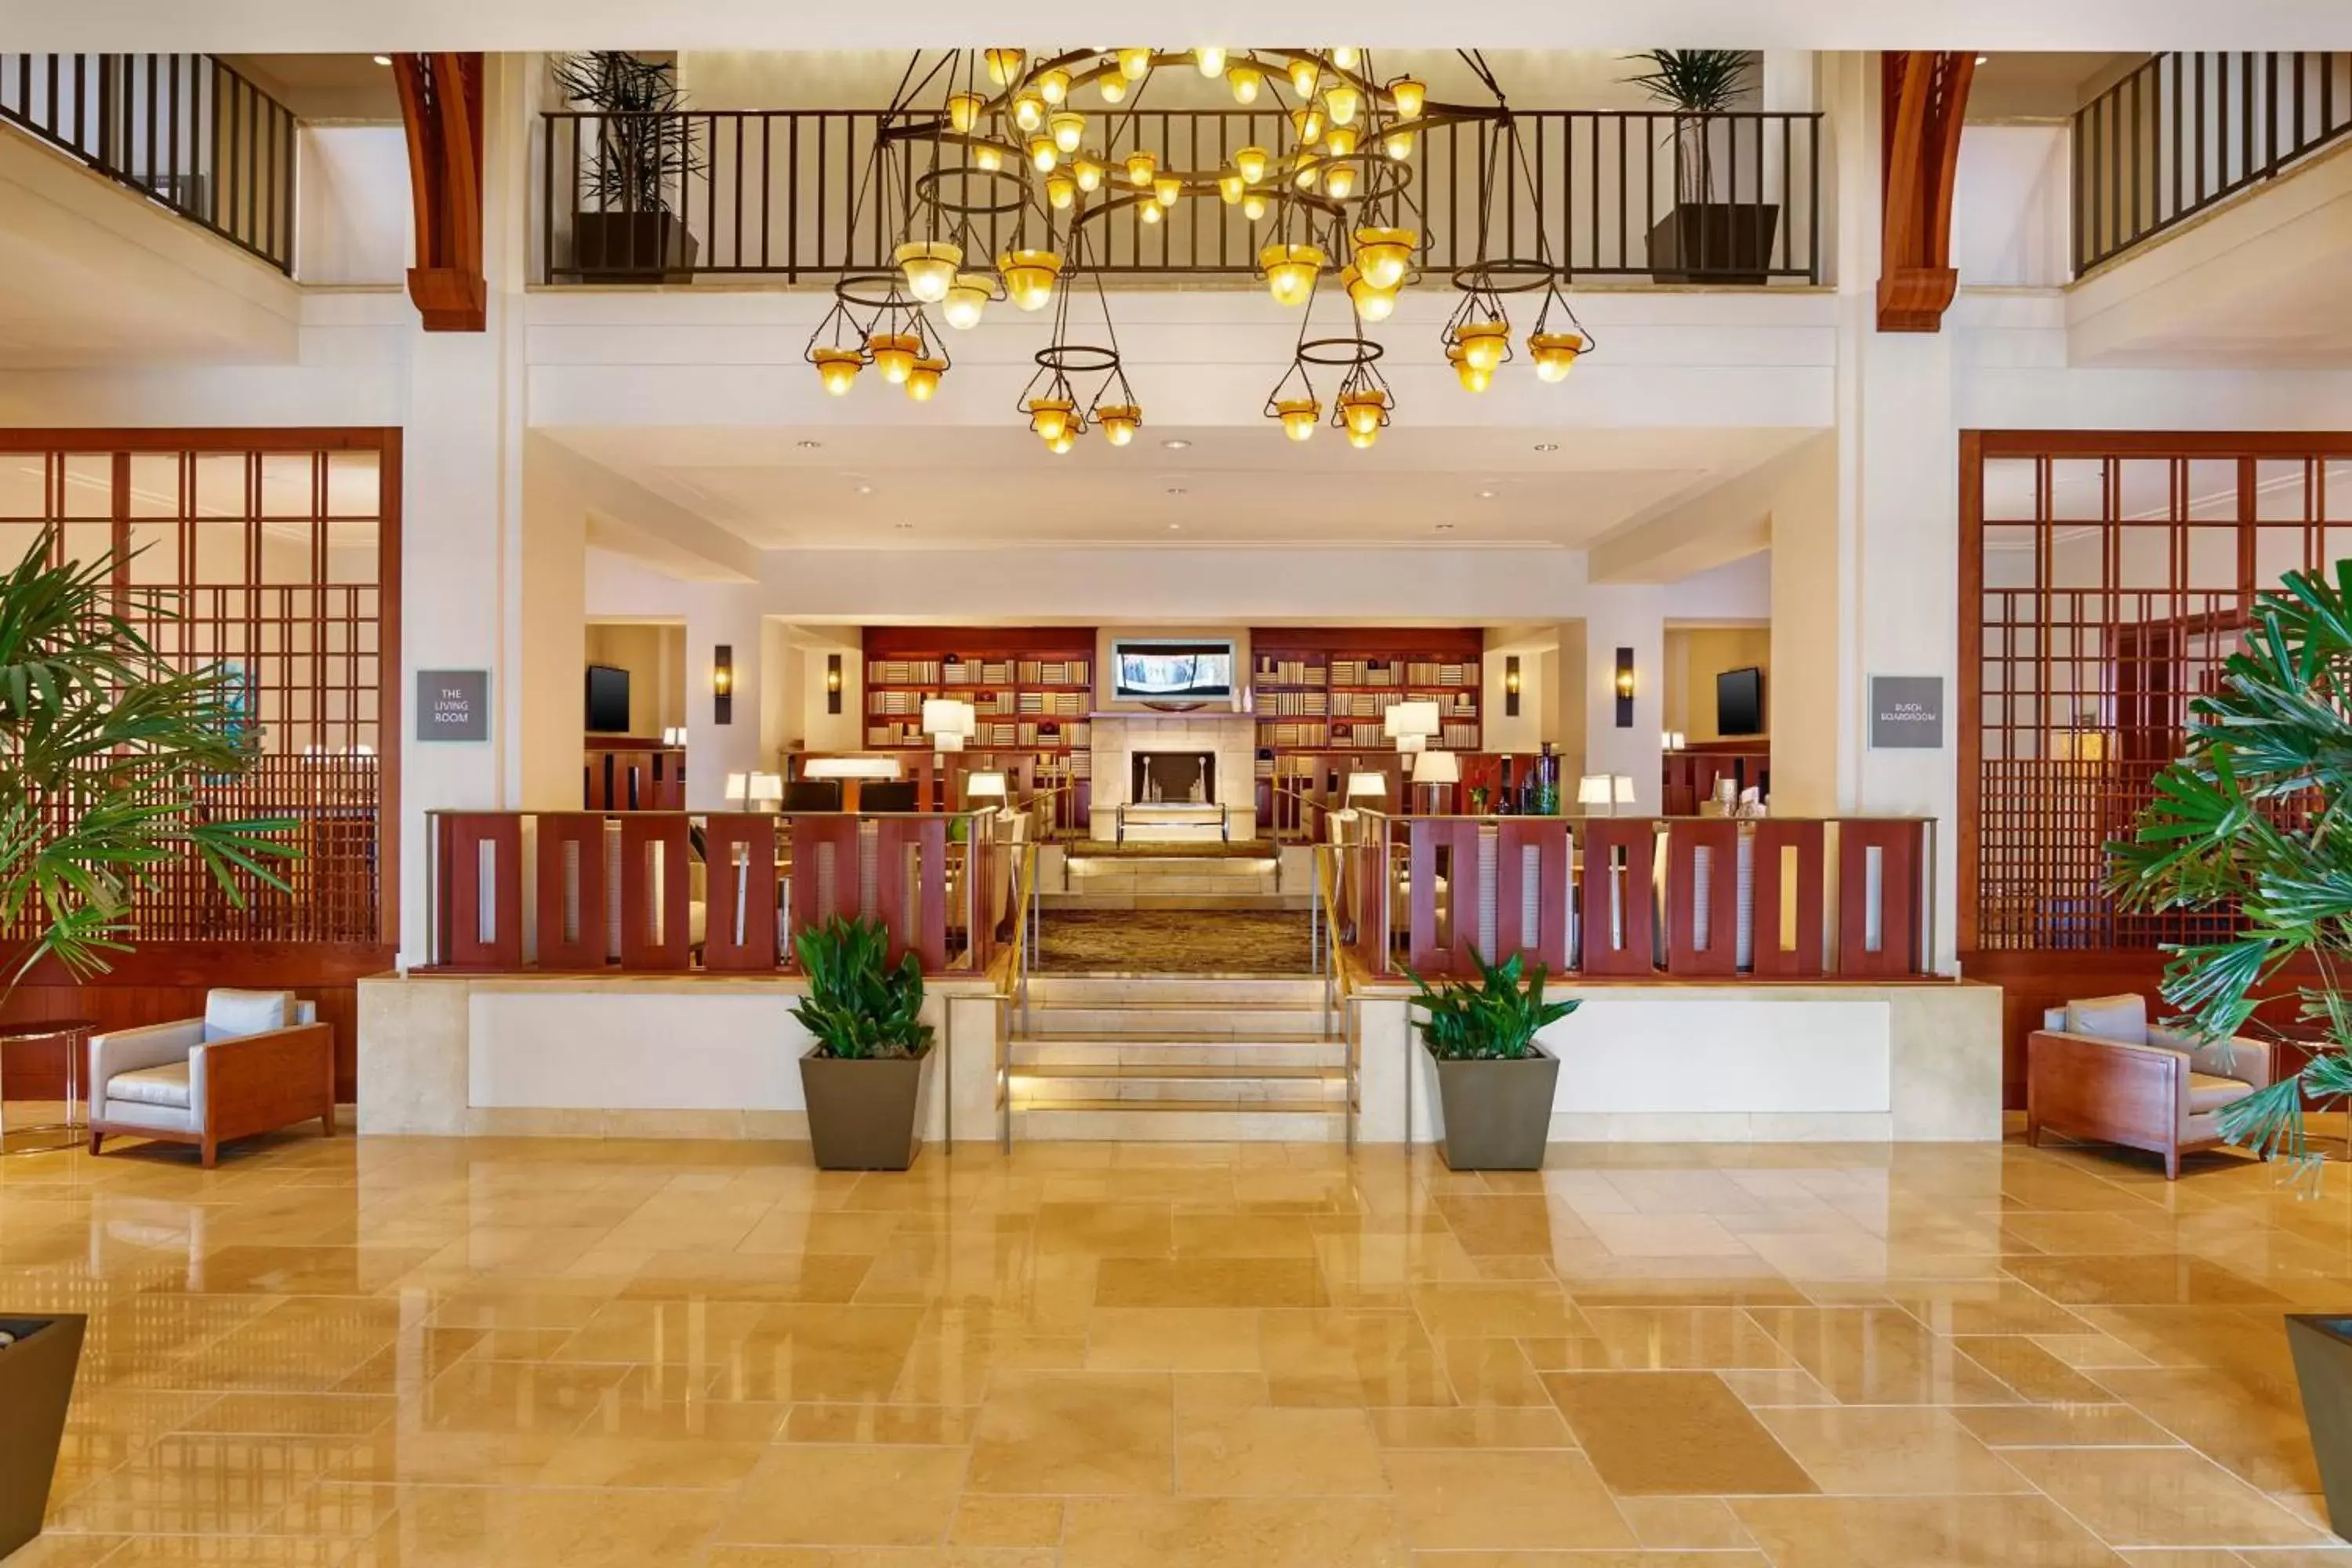 Lobby or reception, Lobby/Reception in The Westin Pasadena